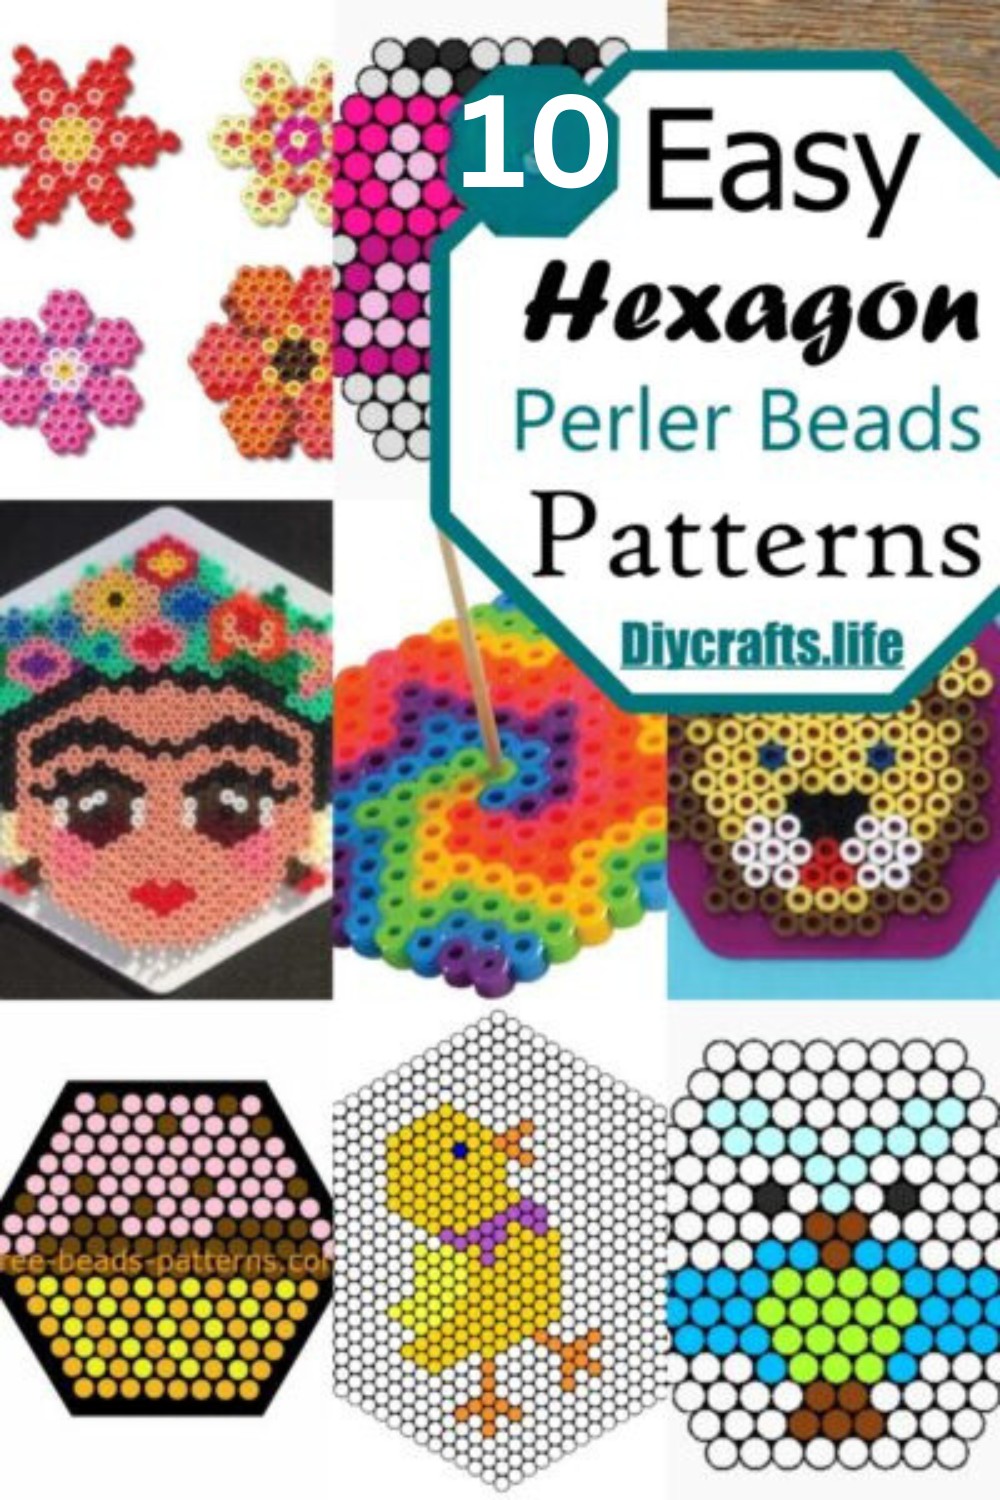 10 Hexagon Perler Bead Patterns